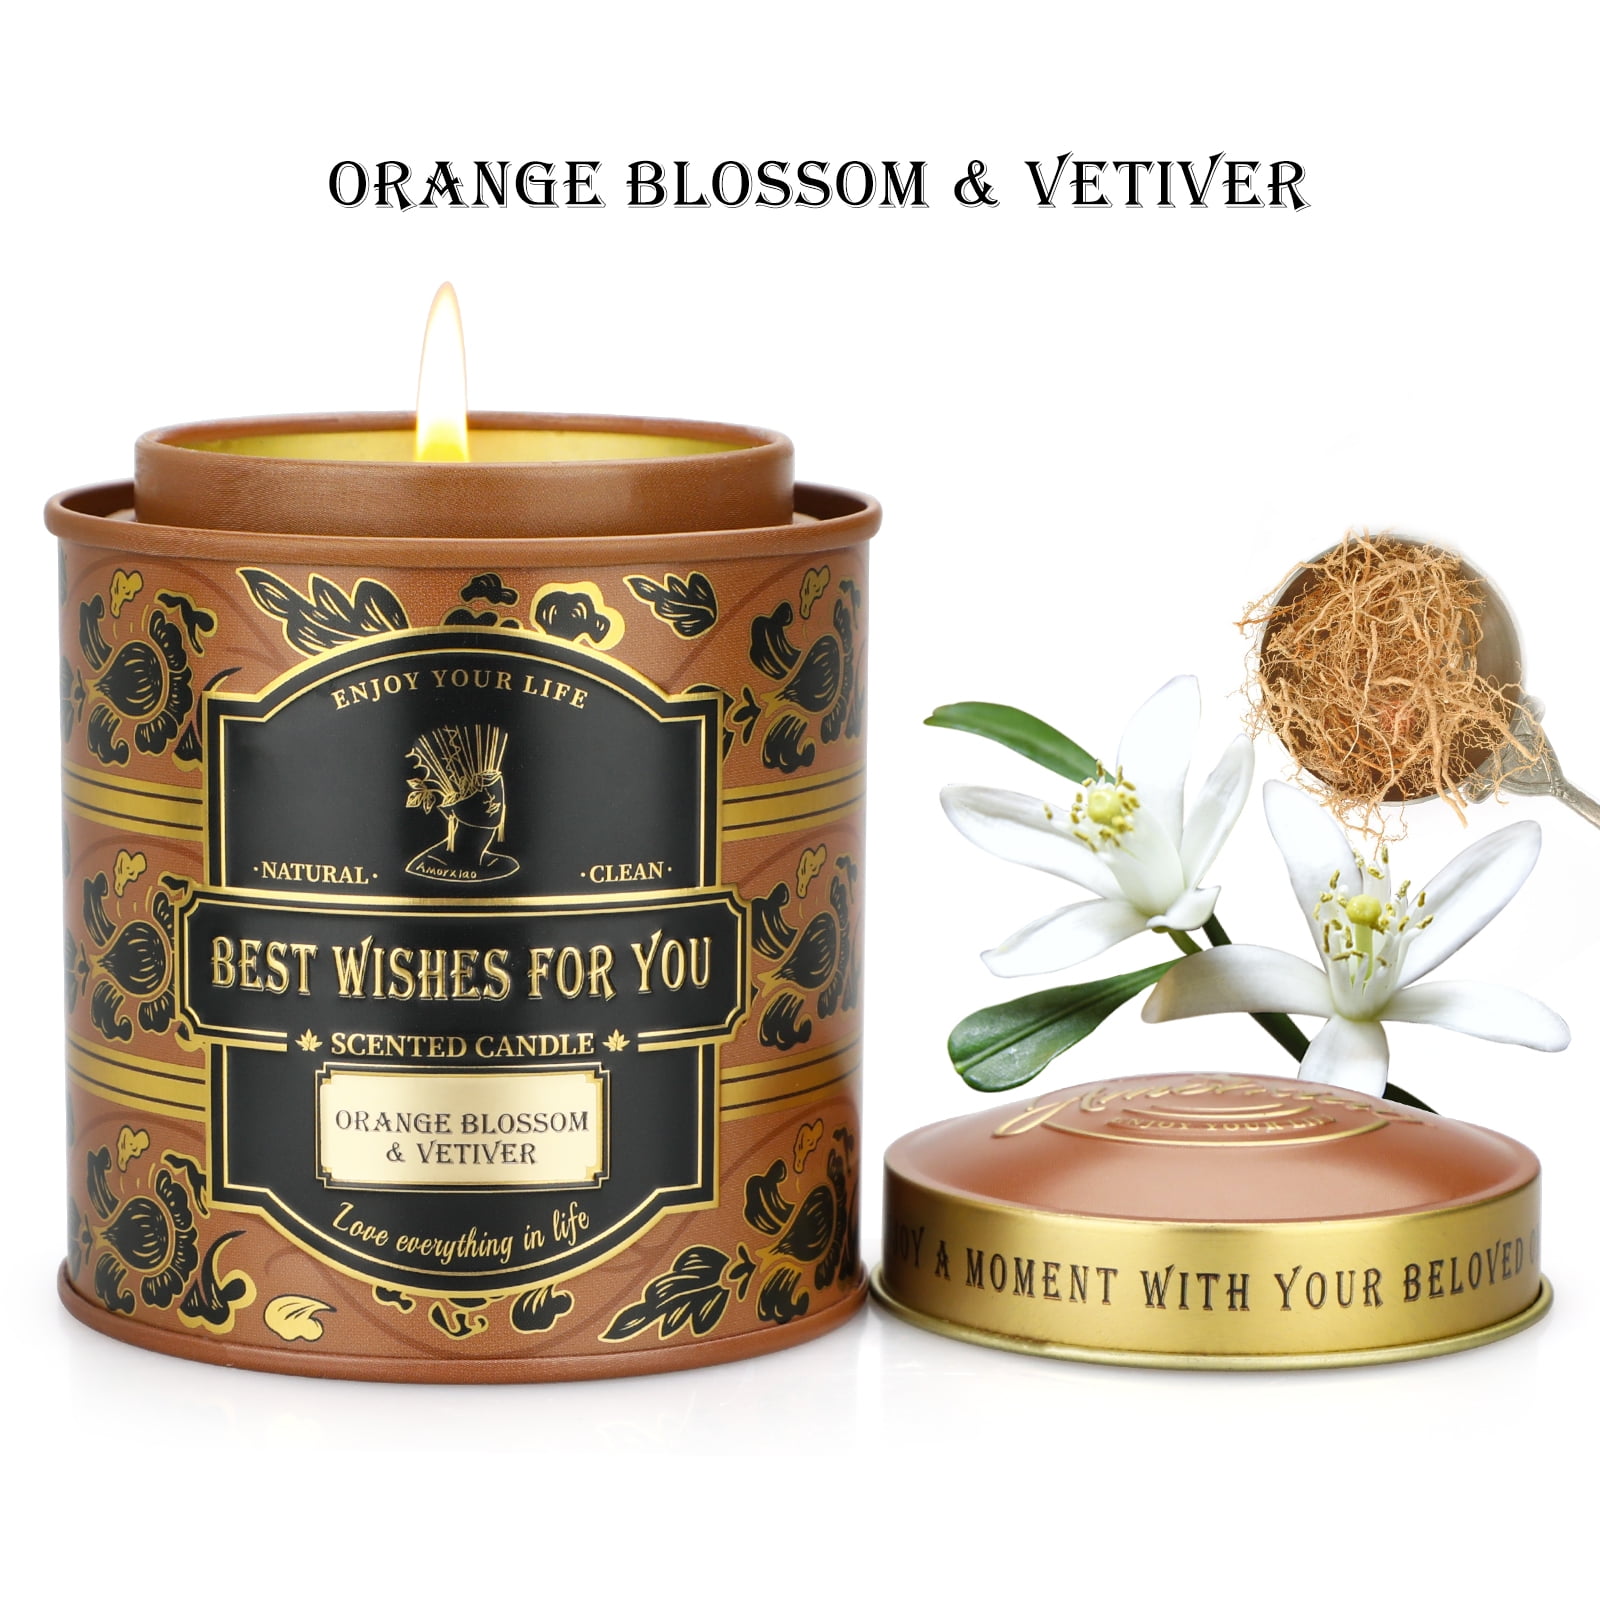 Mahogany Teakwood Fragrance Oil  AAA Candle Supplies – Waxy Flower